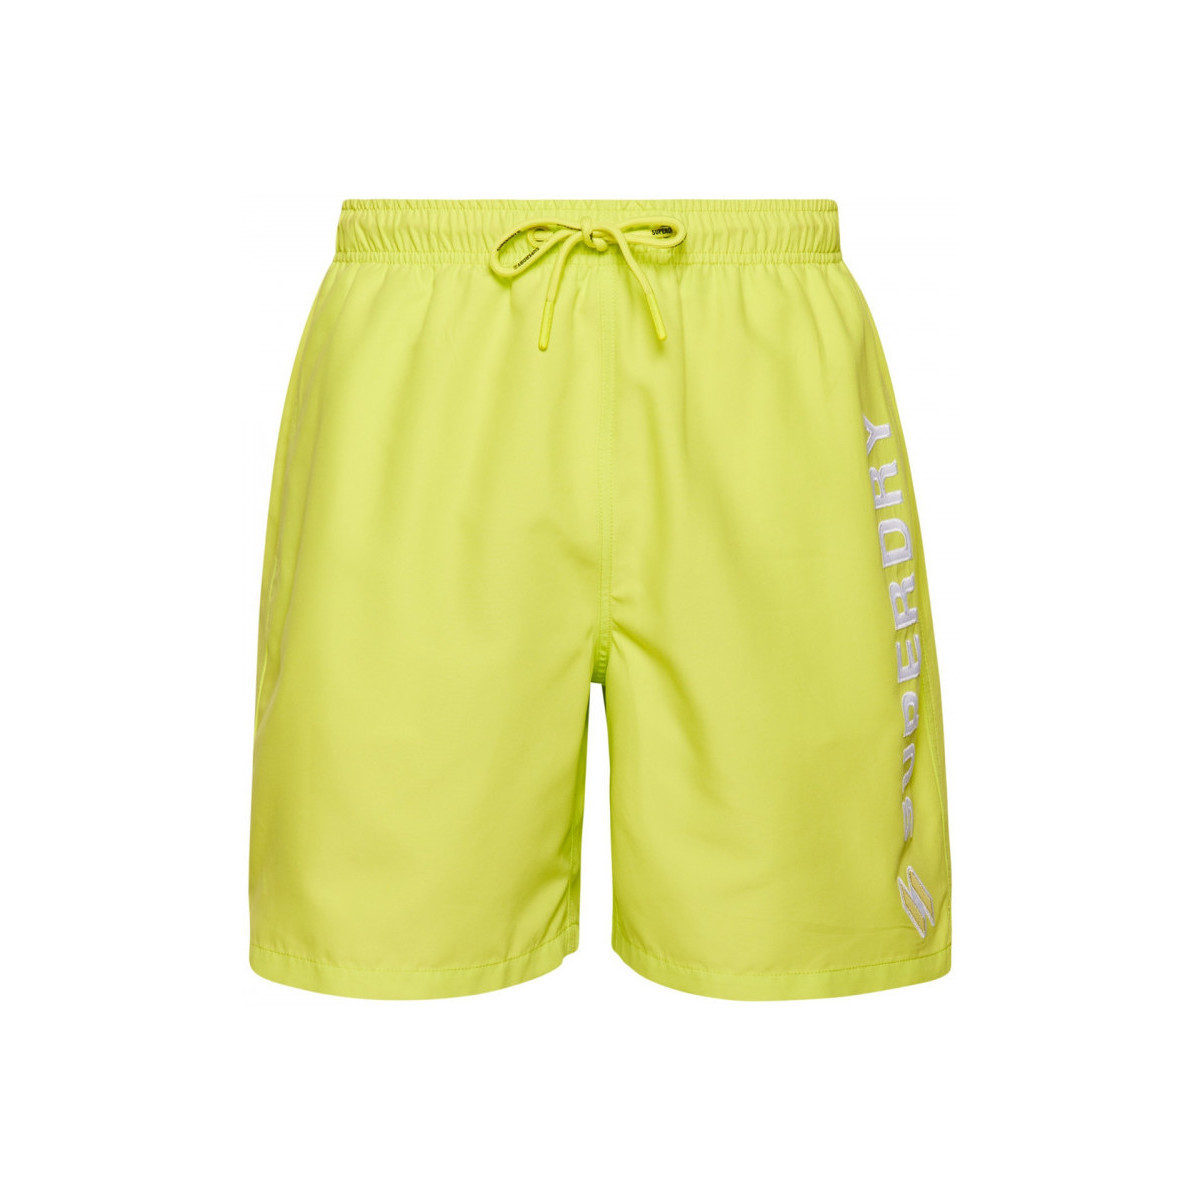 Υφασμάτινα Άνδρας Μαγιώ / shorts για την παραλία Superdry Code applque 19inch Green